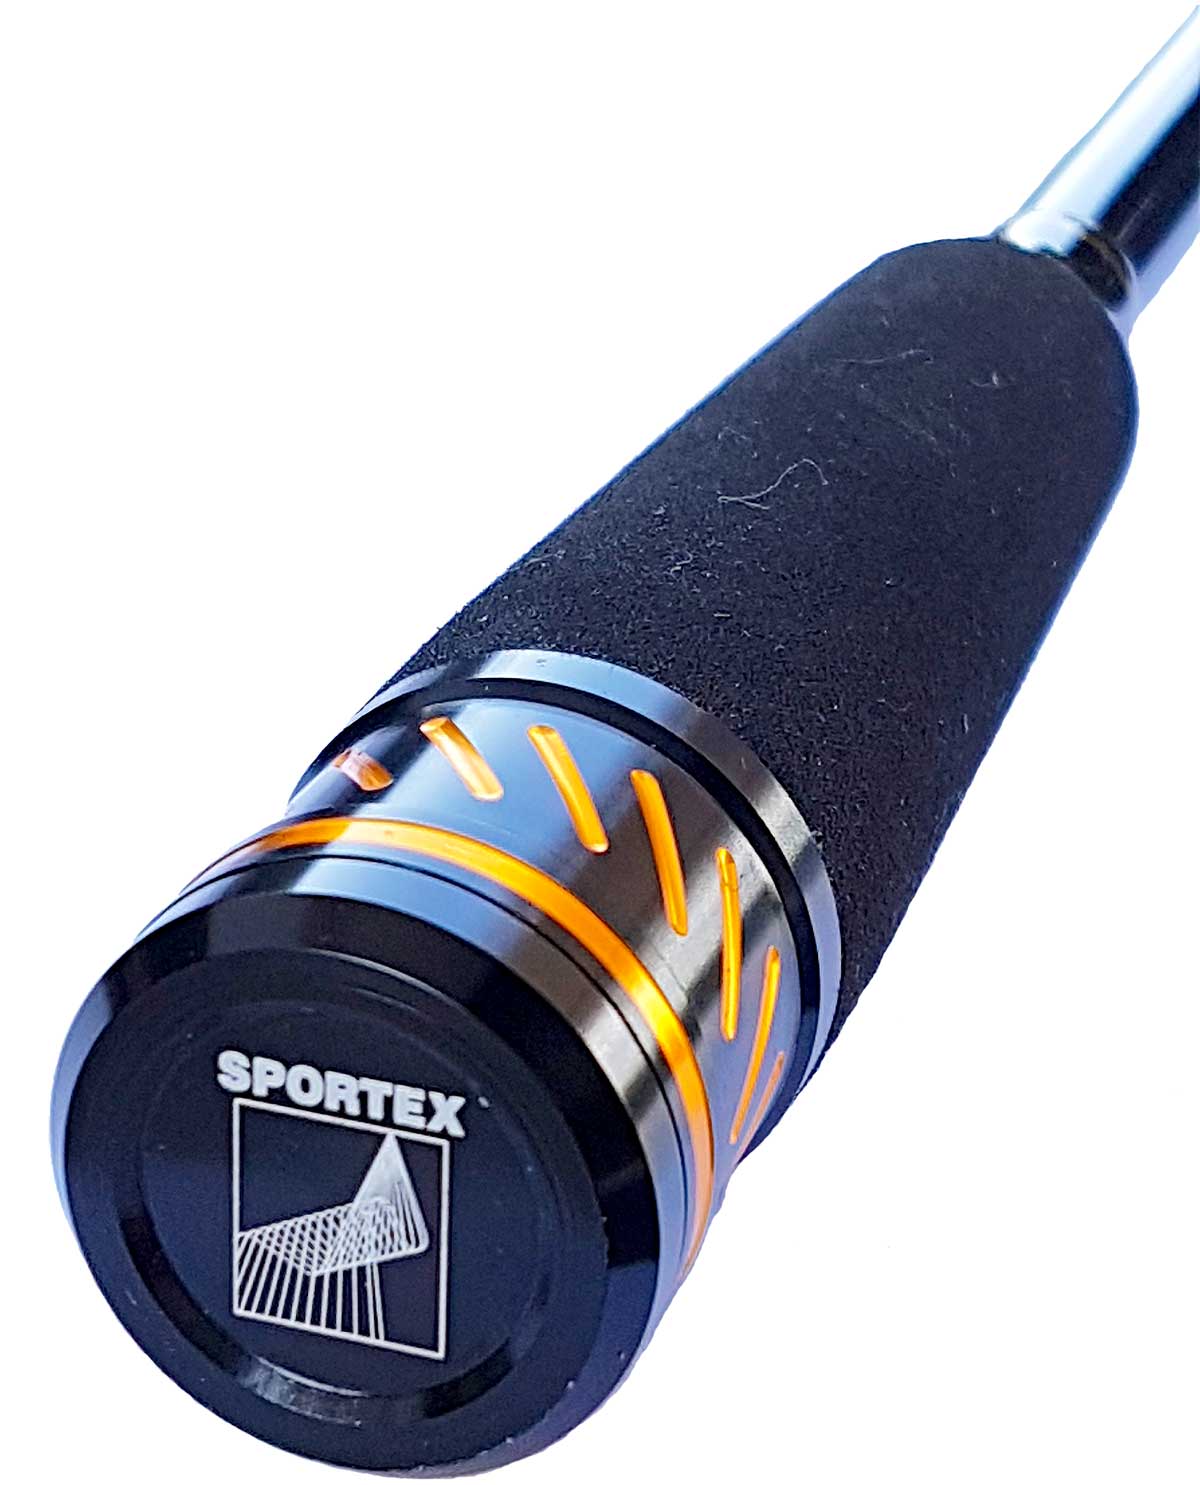 Sportex Spinnrute 2,10m 1-7g Black Arrow G2 BA2122 ultraleicht